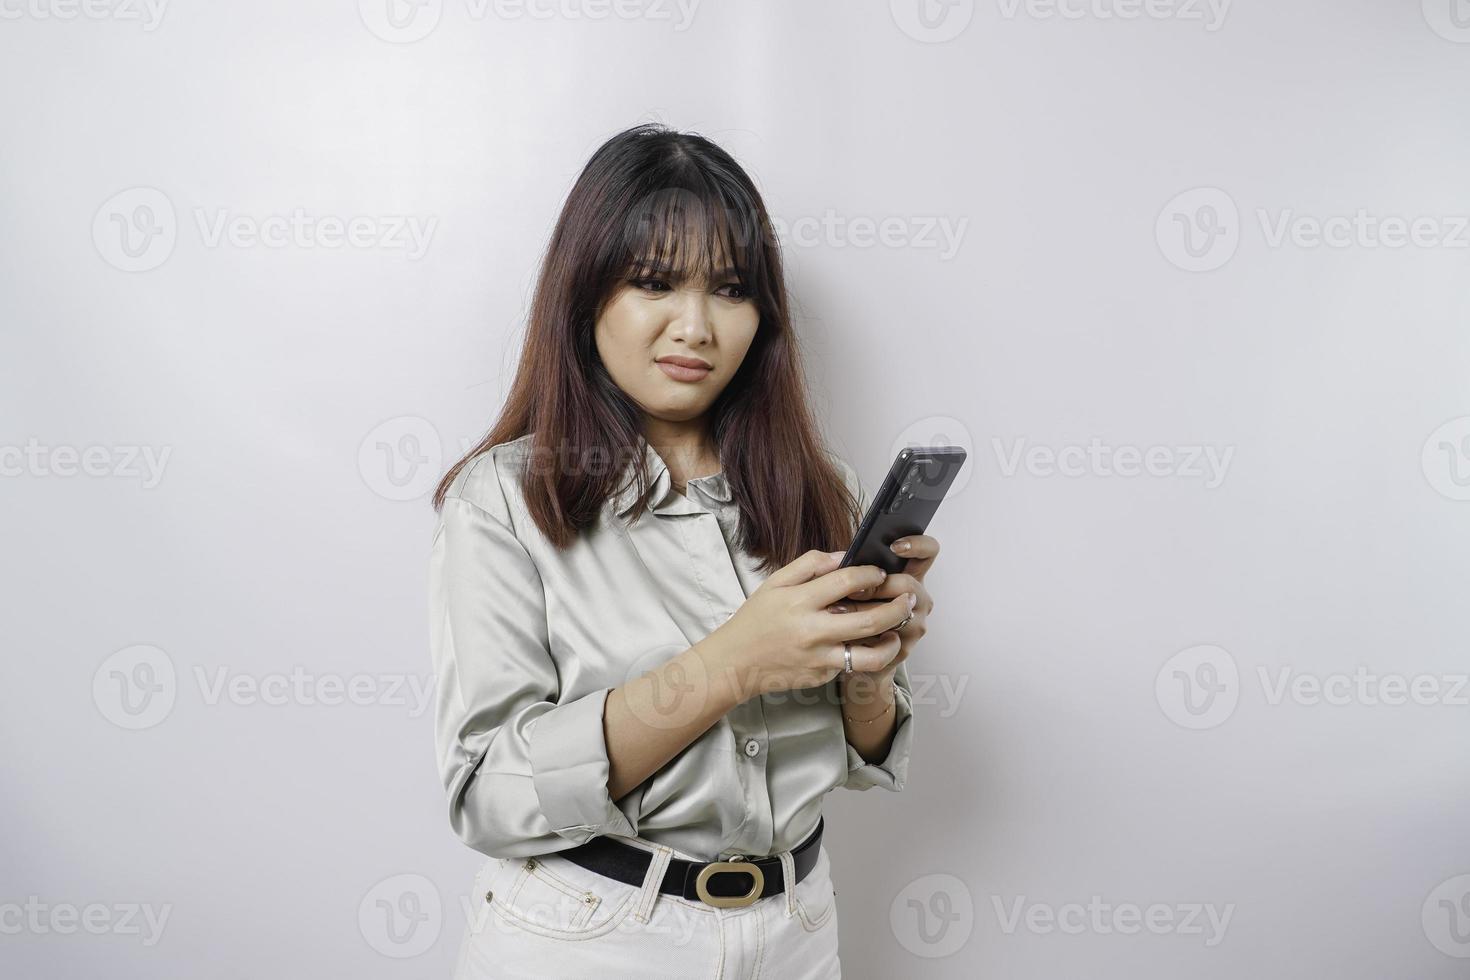 una joven asiática insatisfecha se ve descontenta usando una camisa verde salvia expresiones faciales irritadas sosteniendo su teléfono foto